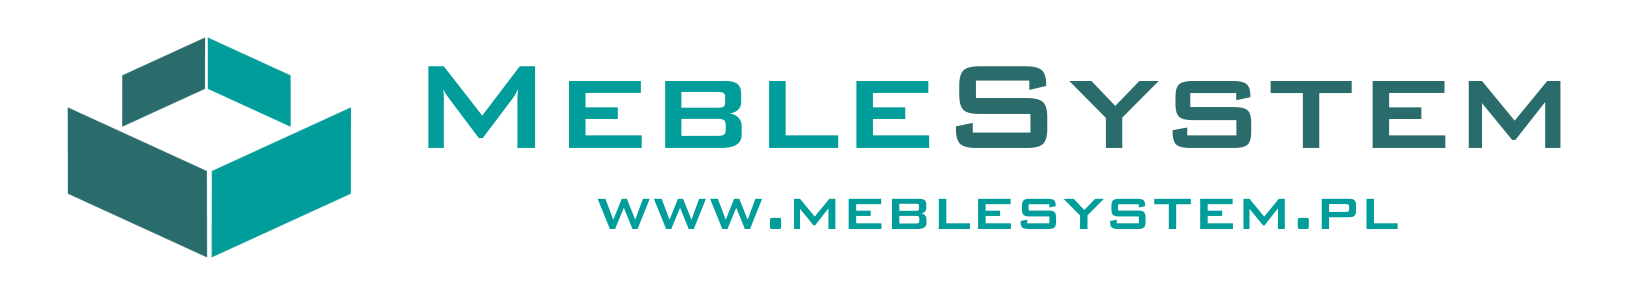 MebleSystem